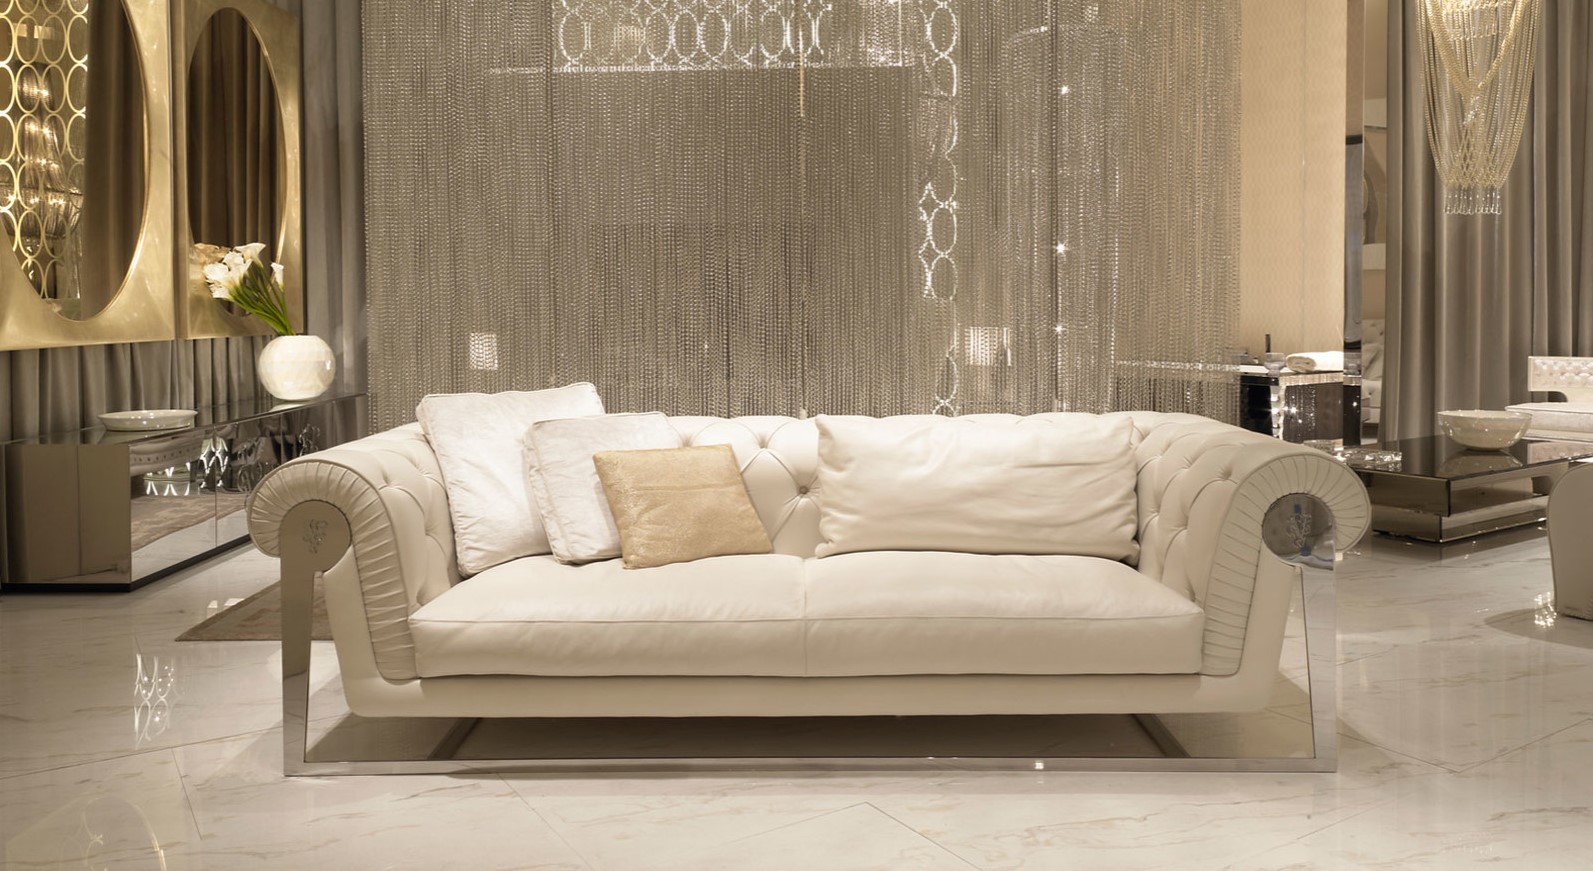 Белый диван с металлическим каркасом прекрасно подходит под роскошный интерьер гостиной